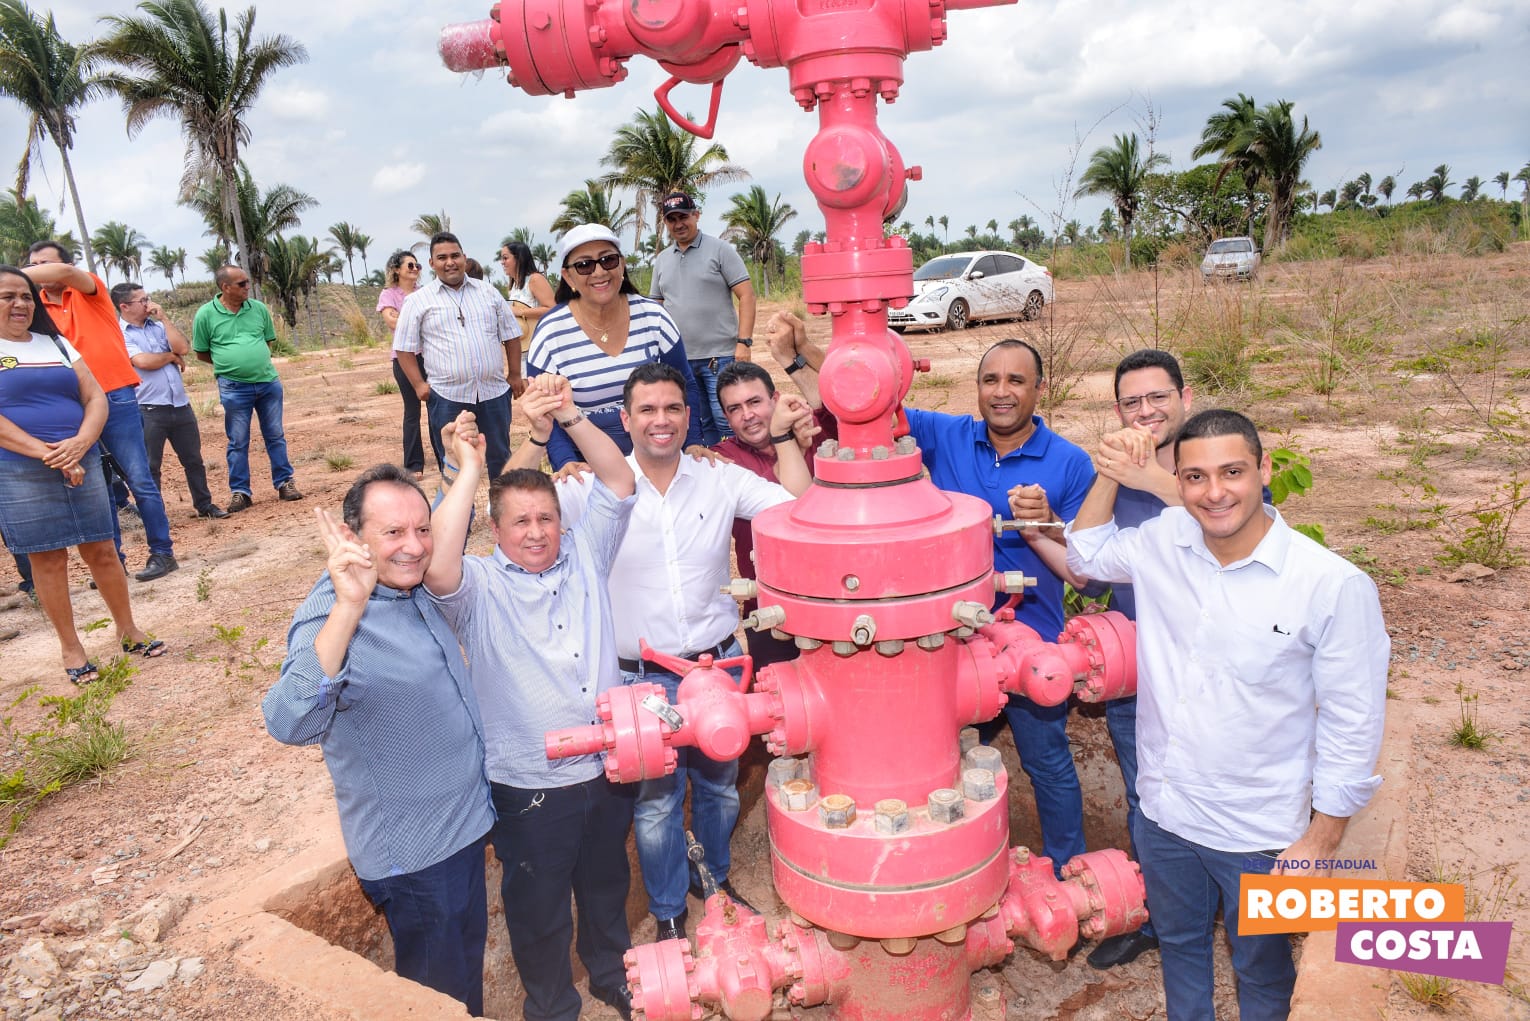 Roberto Costa destaca importância econômica da exploração do gás natural para Bacabal e região